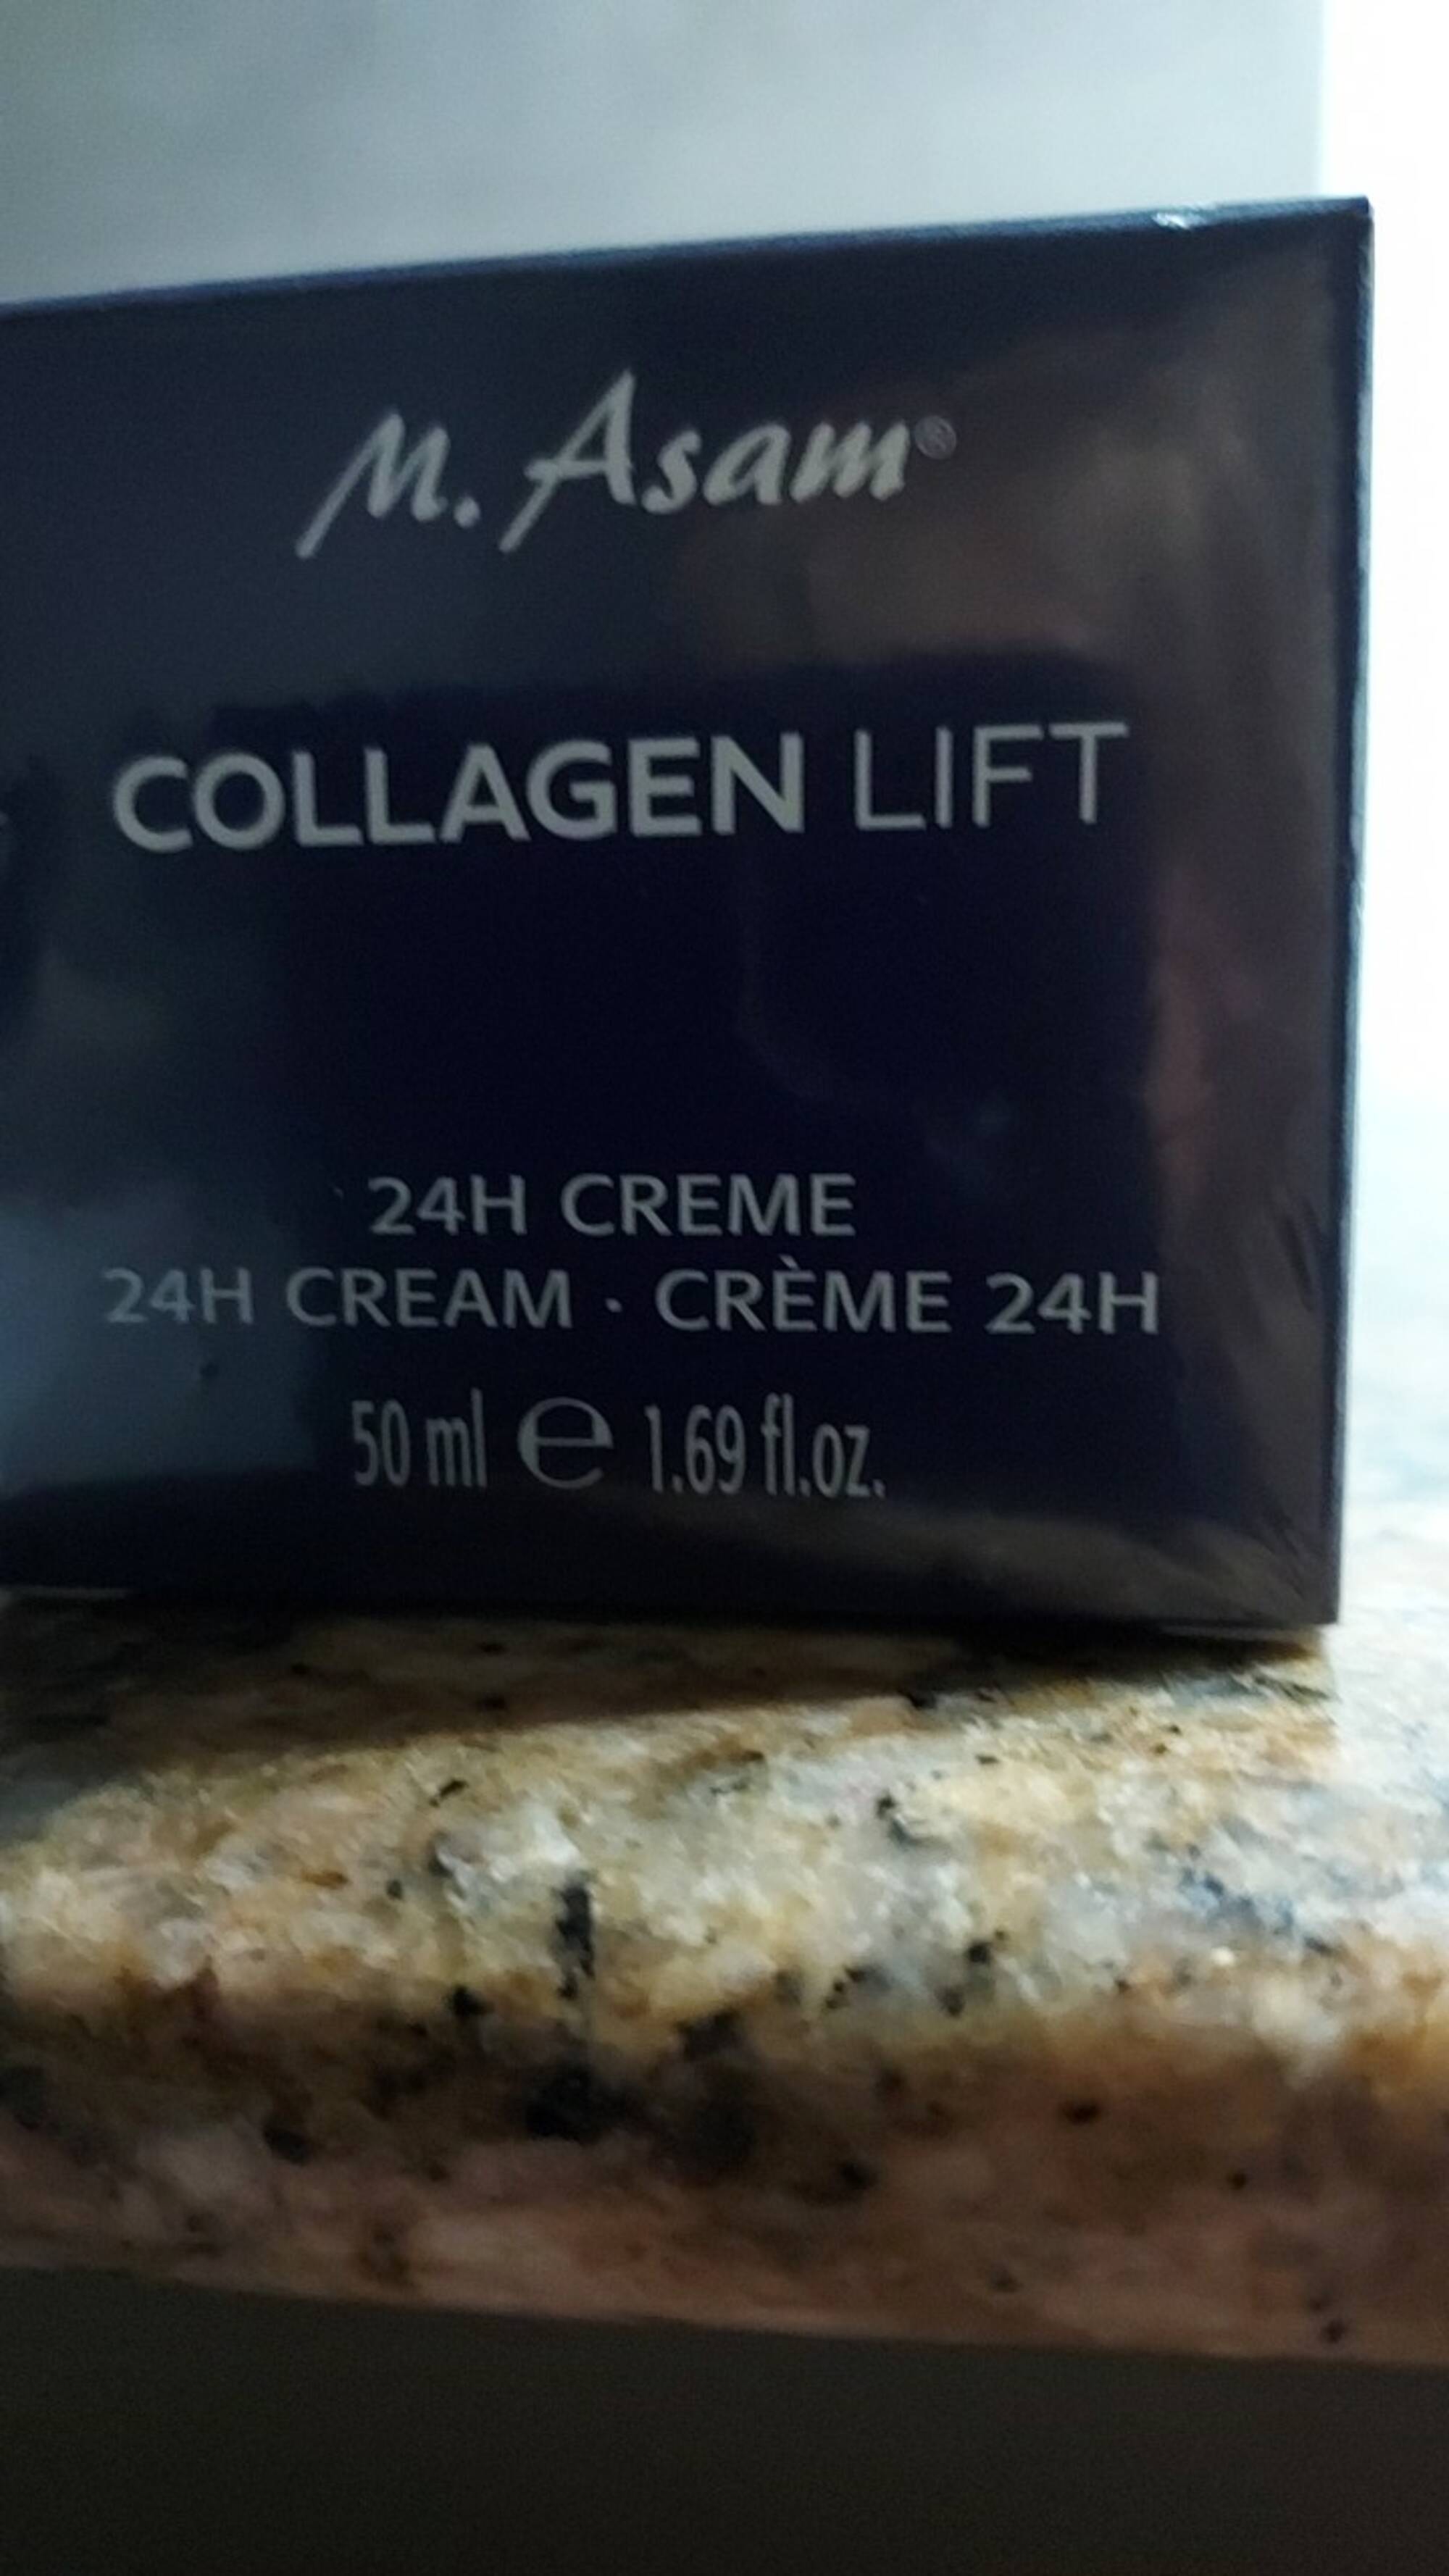 M. ASAM - Collagen Lift - Crème 24h